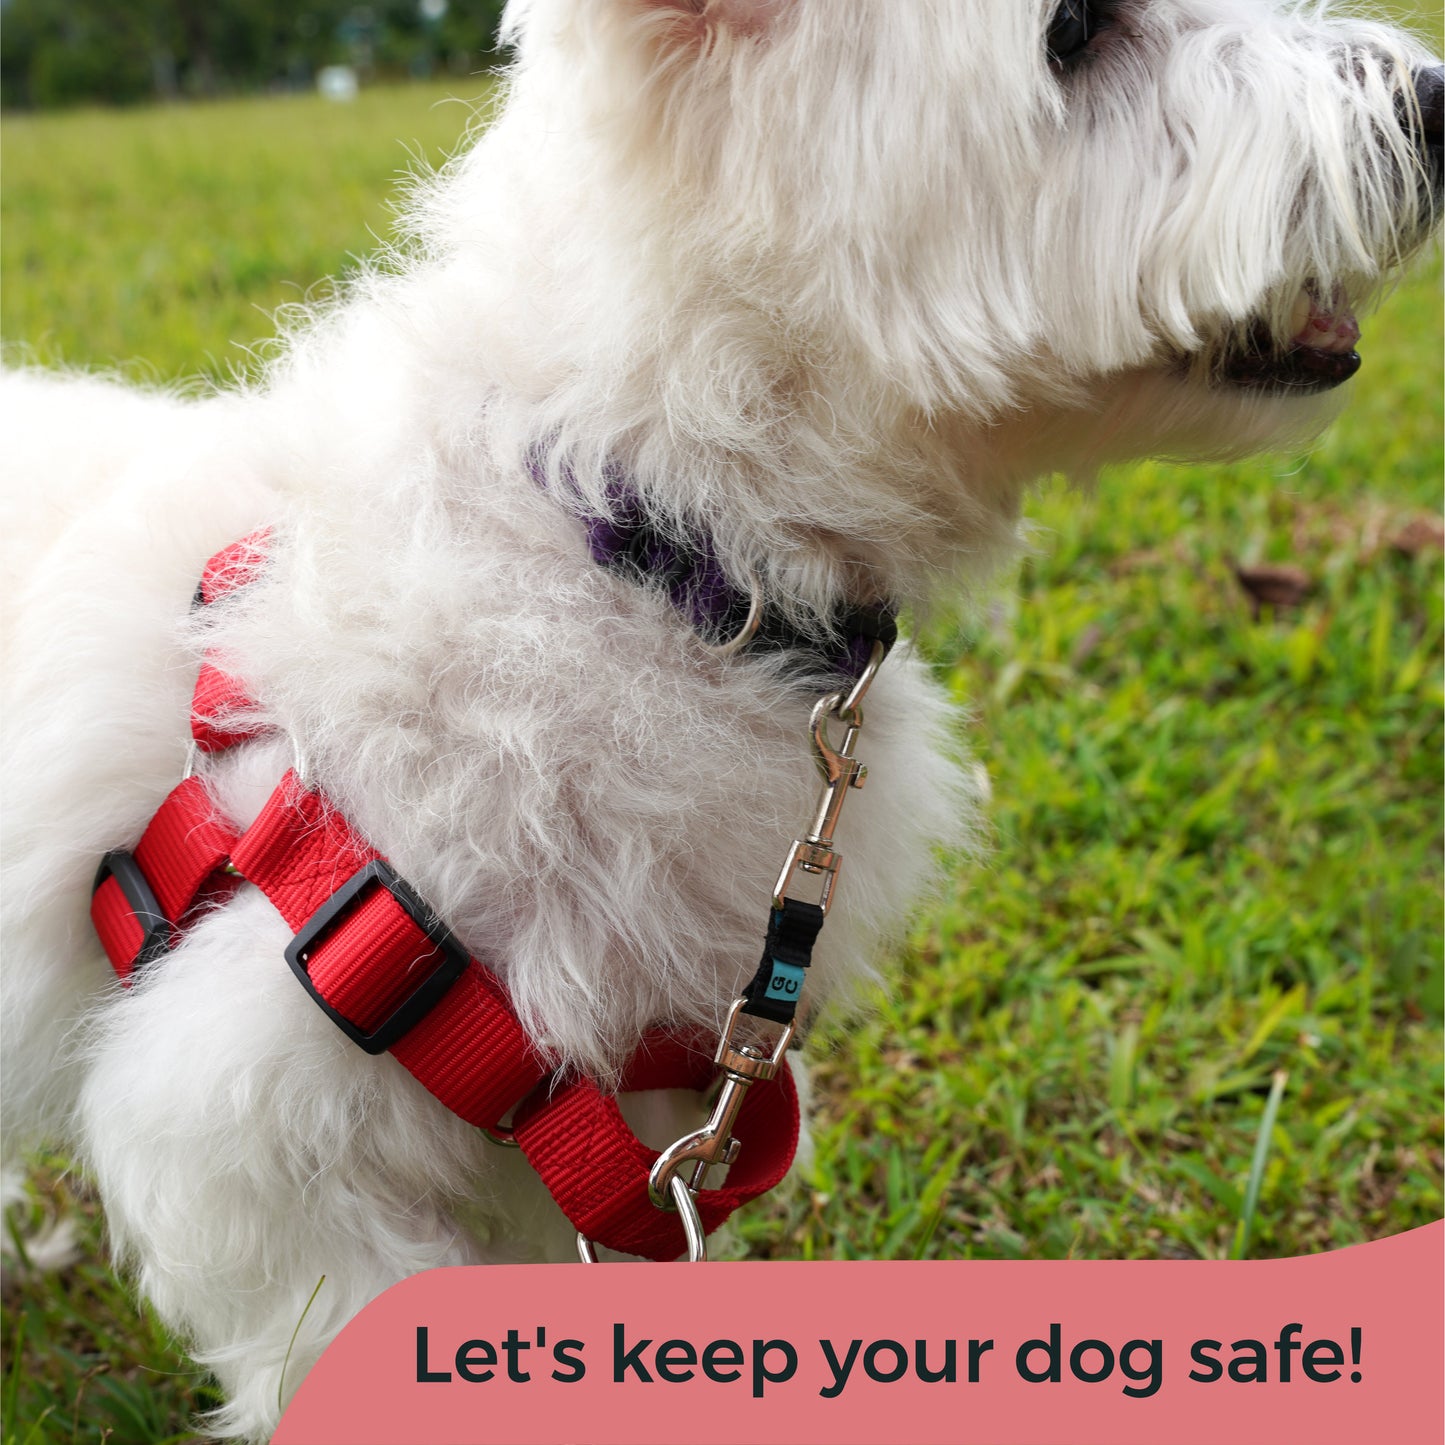 Let's keep your dog safe